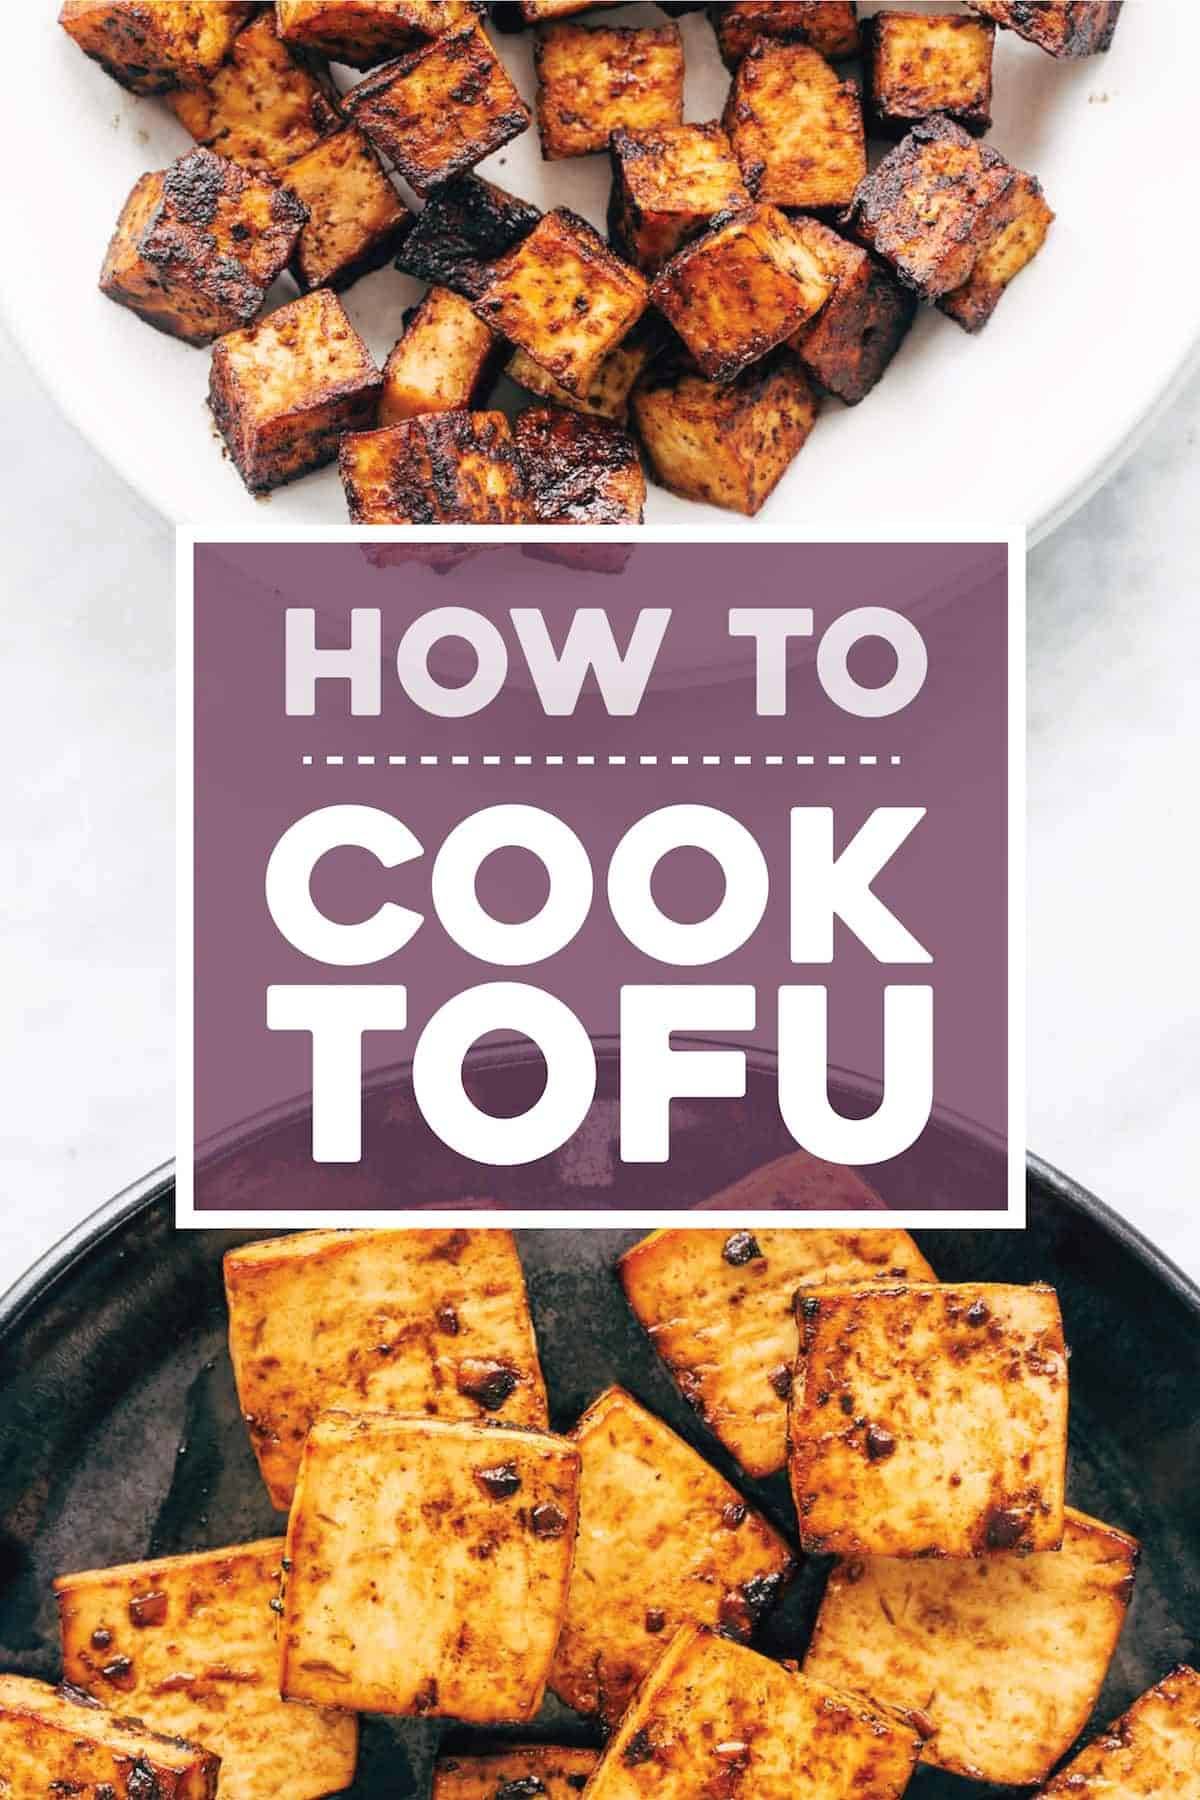 How to cook tofu.